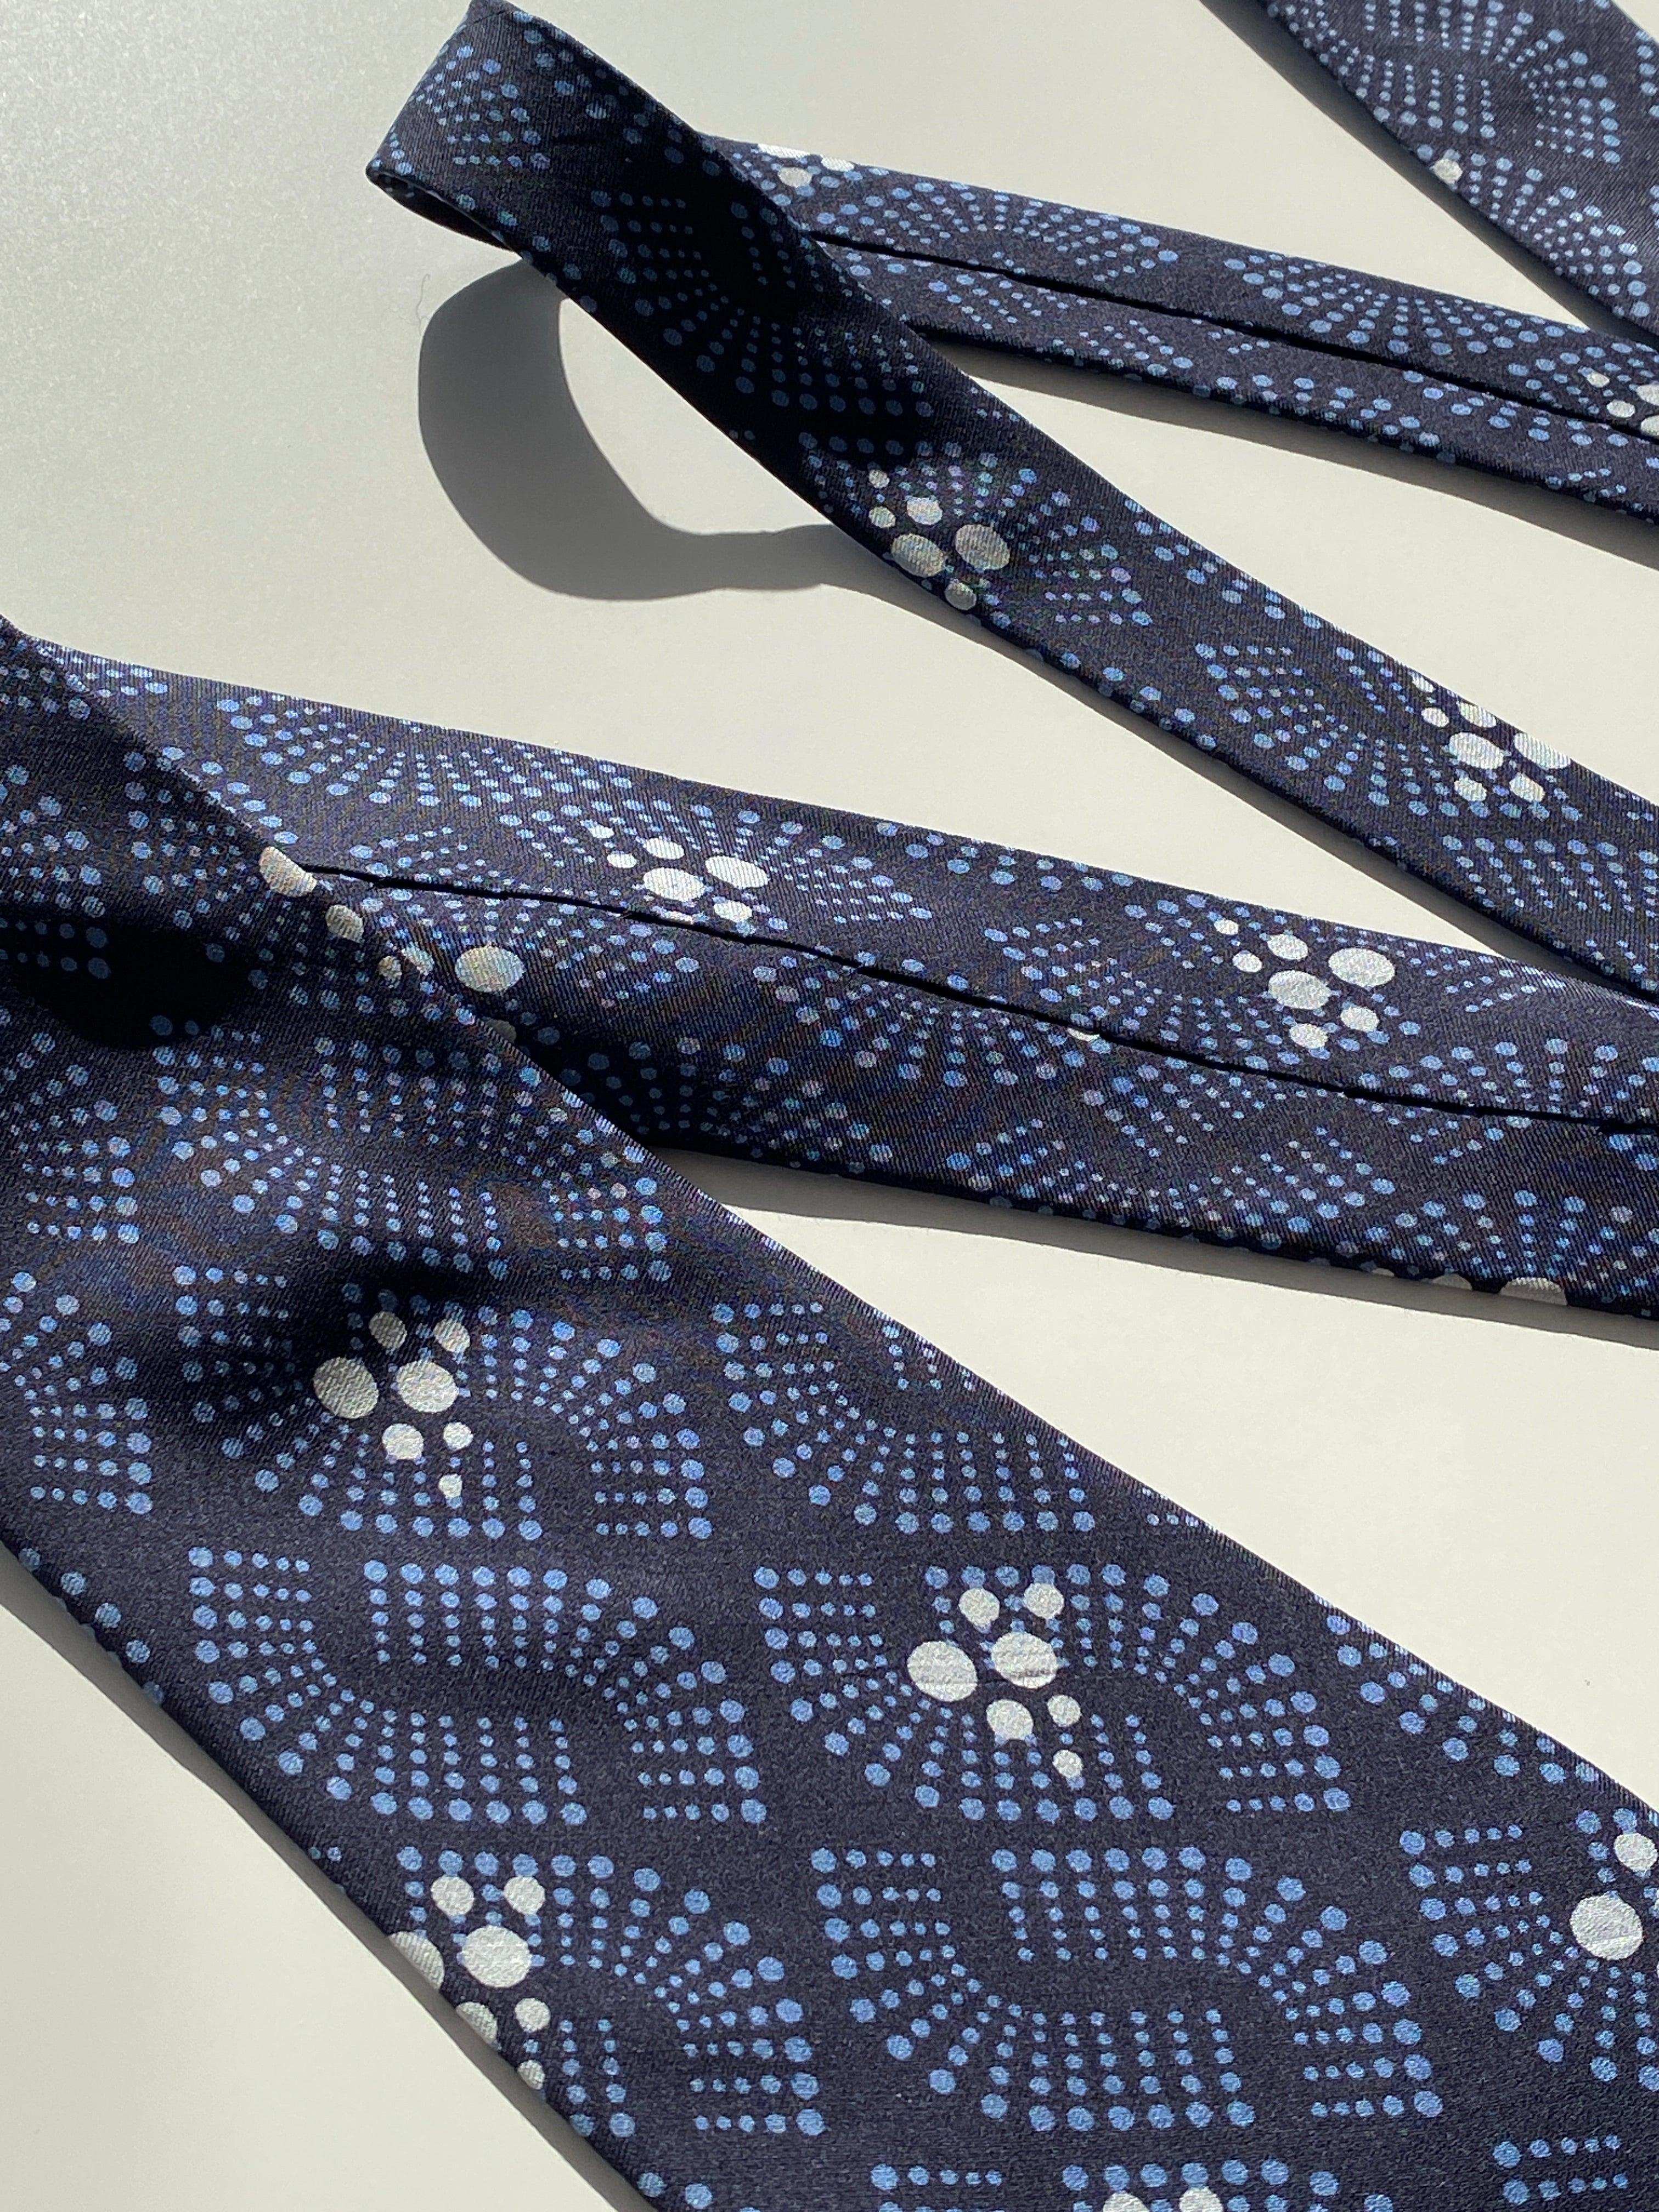 Vintage 80s Reine Seide Printed Silk Tie - Balagan Vintage Ties 80s, 90s, graphic ties, NEW IN, printed tie, tie, vintage ties